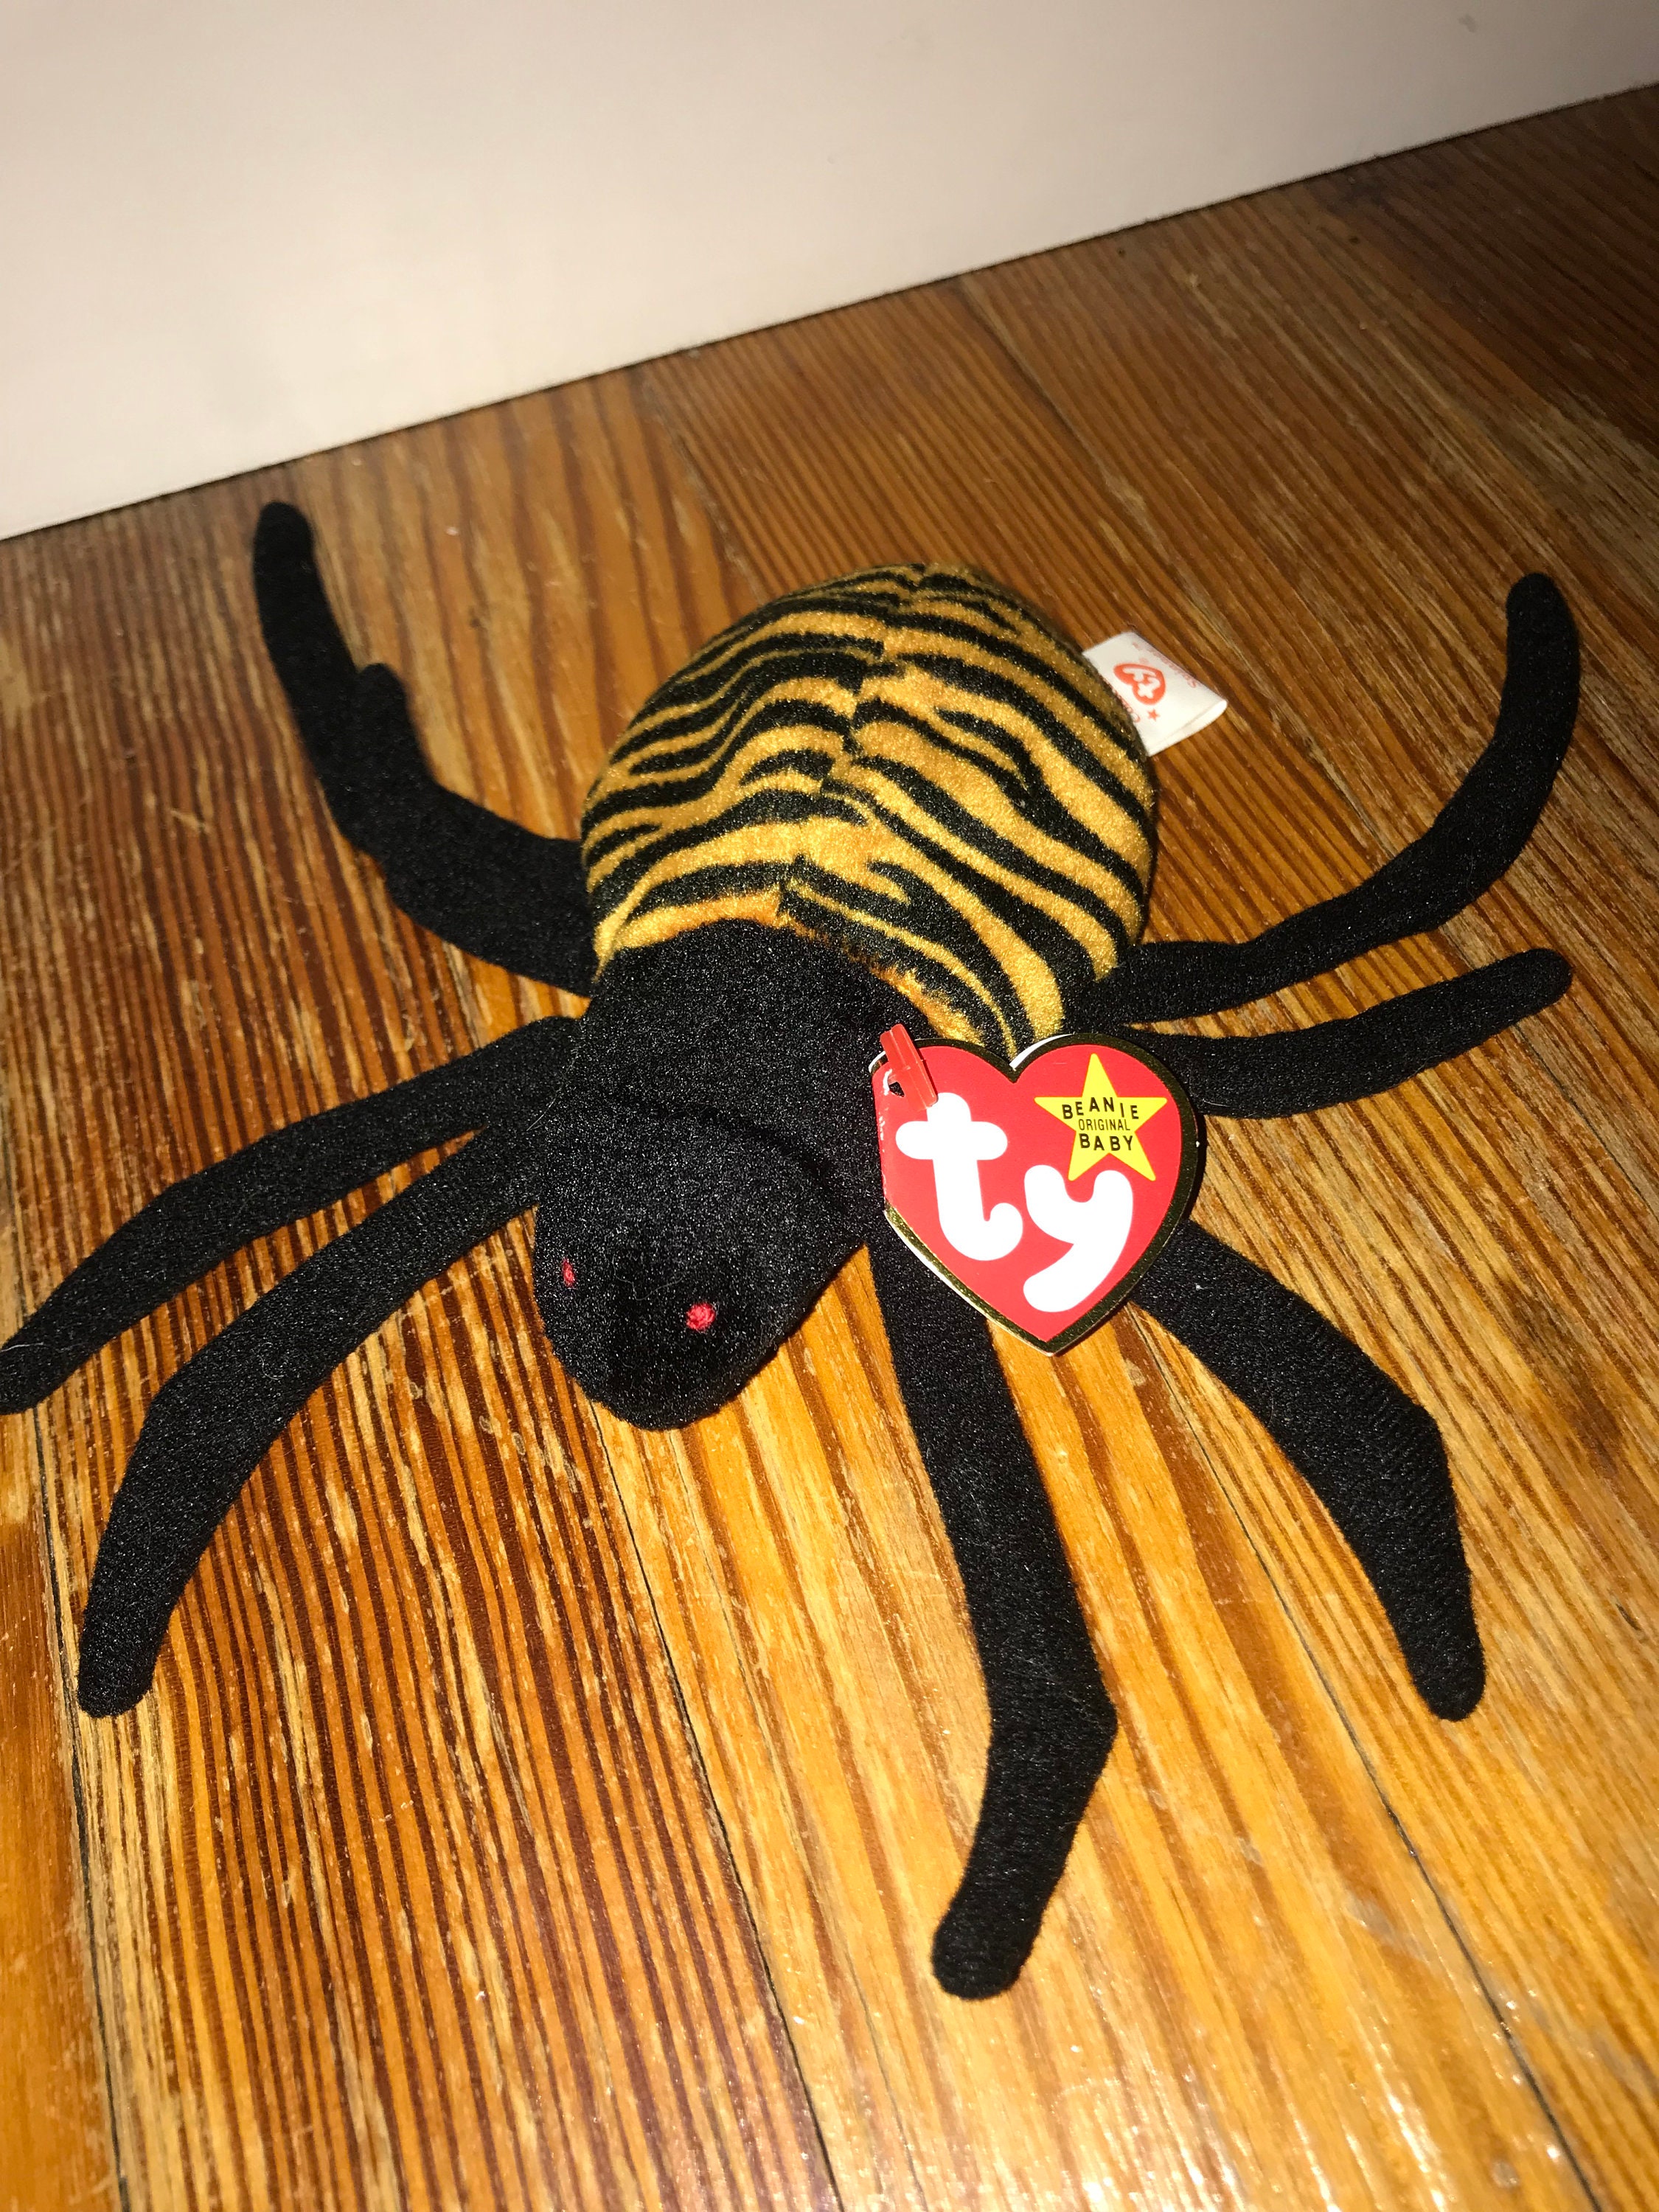 Striped Spider Toy 